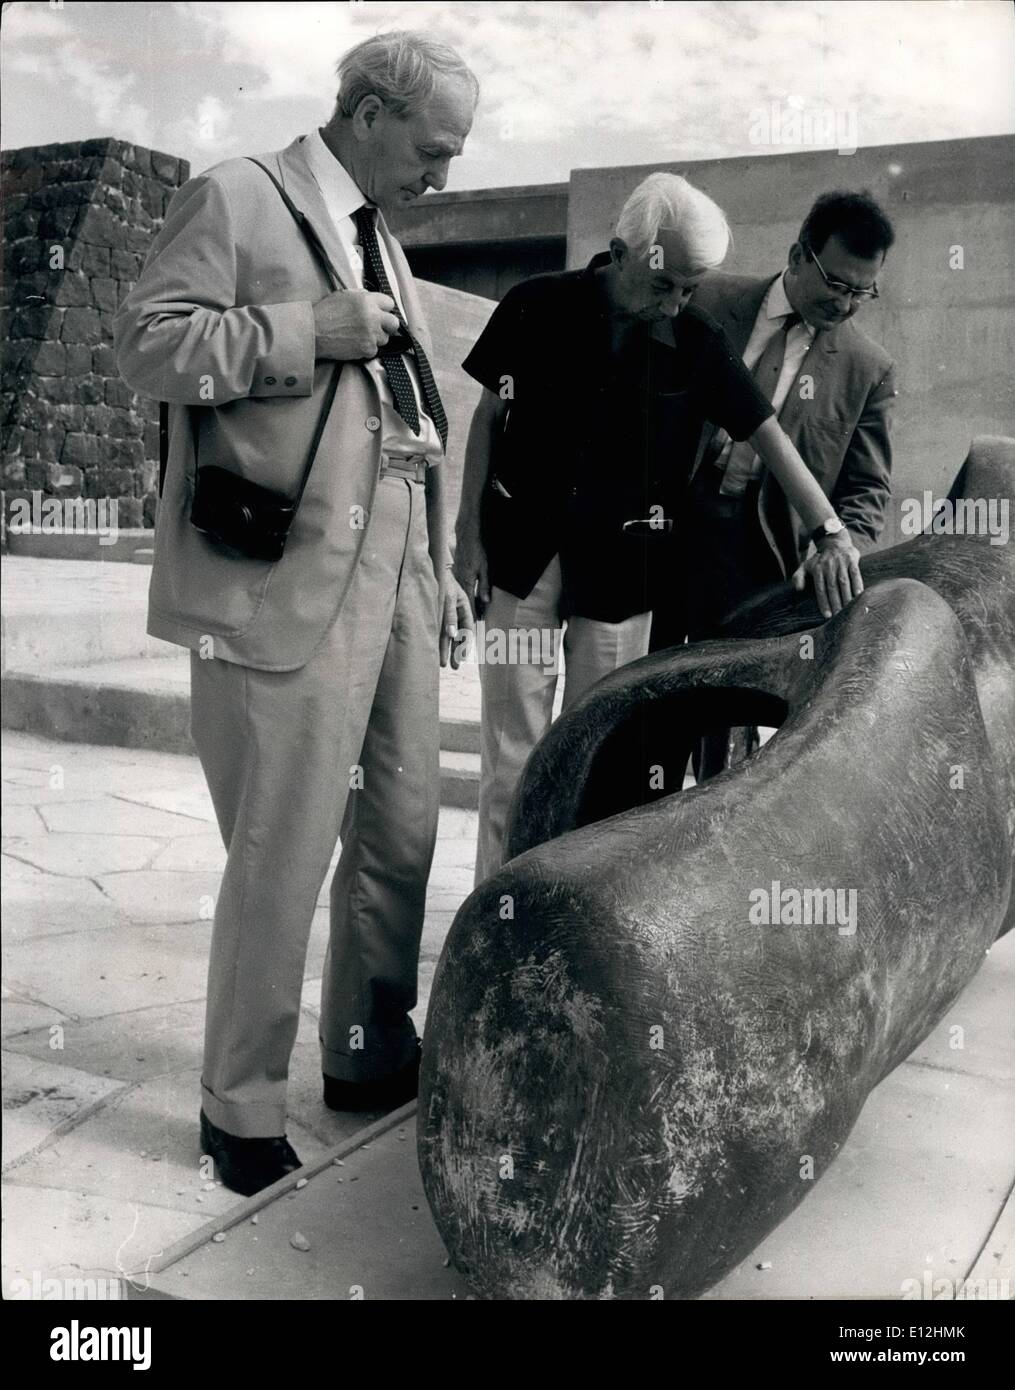 04 janvier 2012 - Henry Moore REND VISITE À SON EXPOSITION À JÉRUSALEM Henry Moore, le célèbre sculpteur britannique a payé une visite inattendue à Jérusalem pour visiter le British Council parrainé 'Exposition Henry Moore'. Il va sans dire que l'exposition qui était composé de cinquante de ses œuvres allant de la minute à maquettes bronzes gigantesques a attiré une foule de visiteurs pour le Musée d'Israël. Le 68-year-old sculpteur a été fortement impressionné par la combinaison de l'établissement par l'homme et la grandeur naturelle de la collines de Judée comme arrière-plan pour ses oeuvres monumentales Banque D'Images